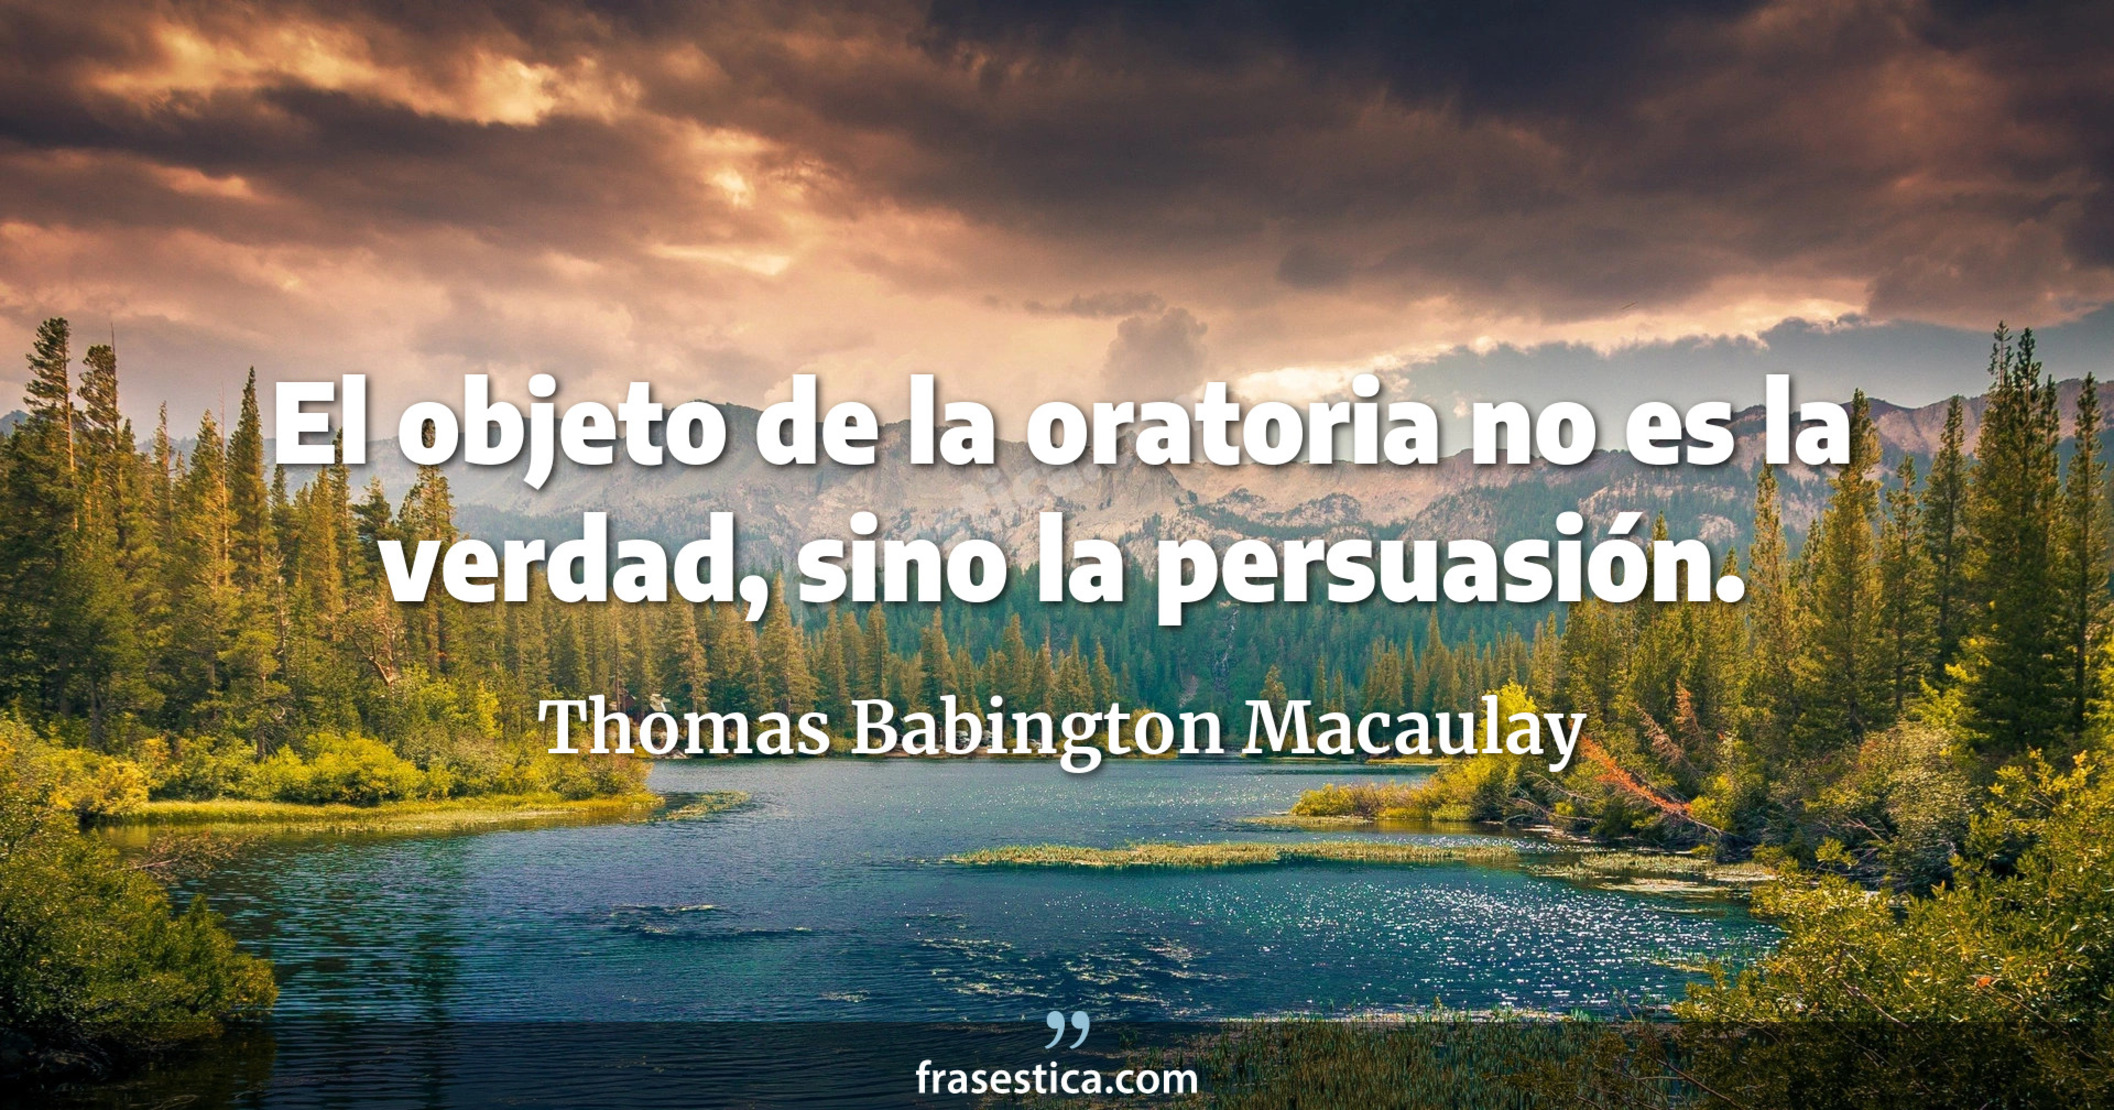 El objeto de la oratoria no es la verdad, sino la persuasión. - Thomas Babington Macaulay